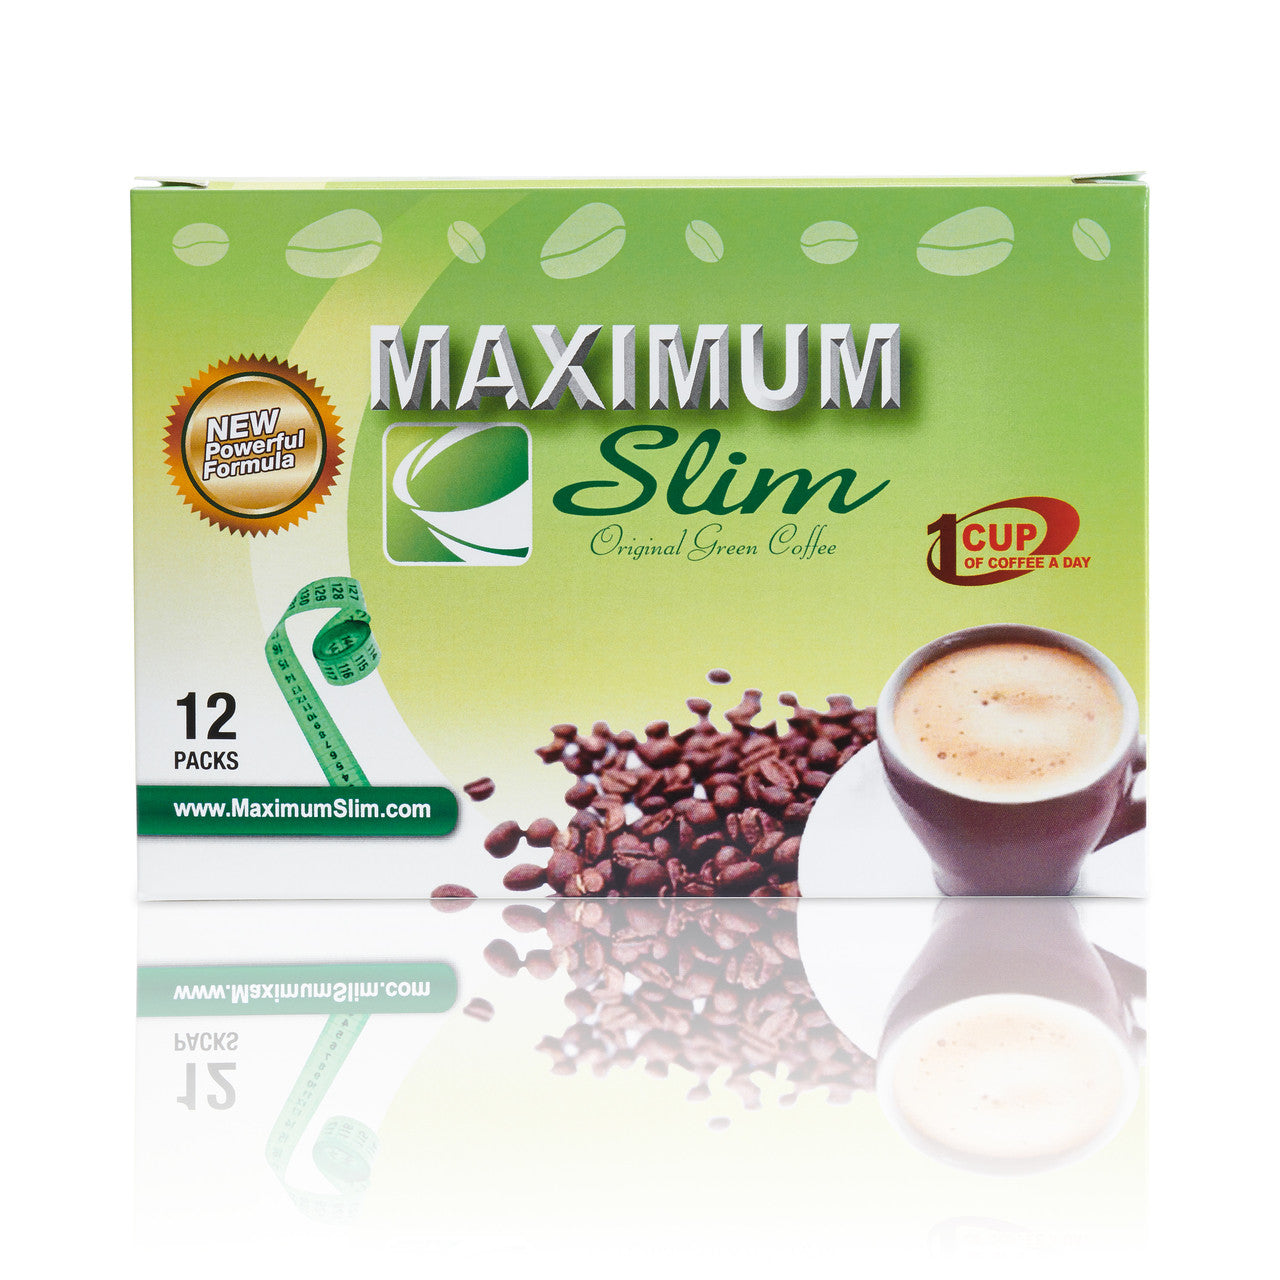 Maximum Slim Original Green Coffee, 12